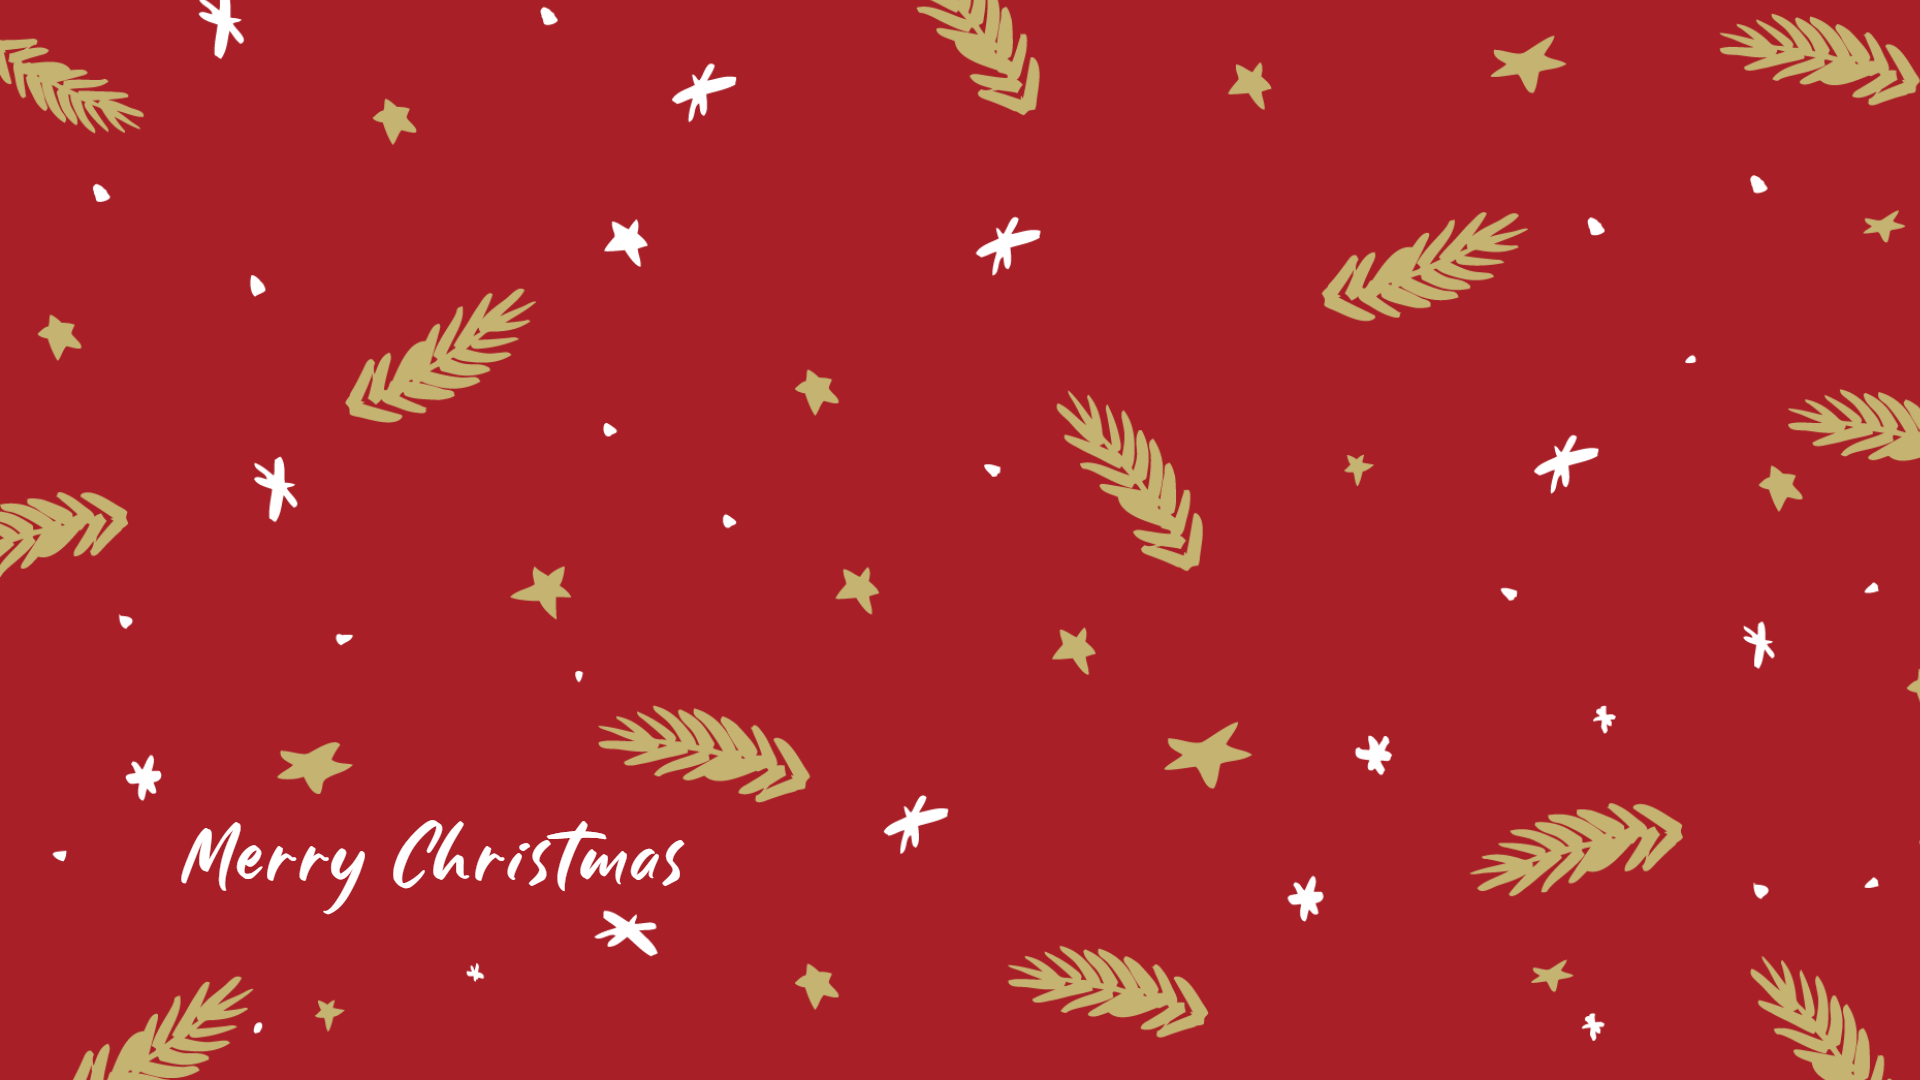 Hình nền Giáng sinh: Với những hình nền Giáng sinh đẹp mắt, bạn sẽ được trải nghiệm cảm giác đang chờ đón đêm Noel tràn ngập niềm vui và hạnh phúc. Hãy để mỗi hình nền đưa bạn đến một thế giới đầy màu sắc, đầy ấm áp và đầy năng lượng tích cực.